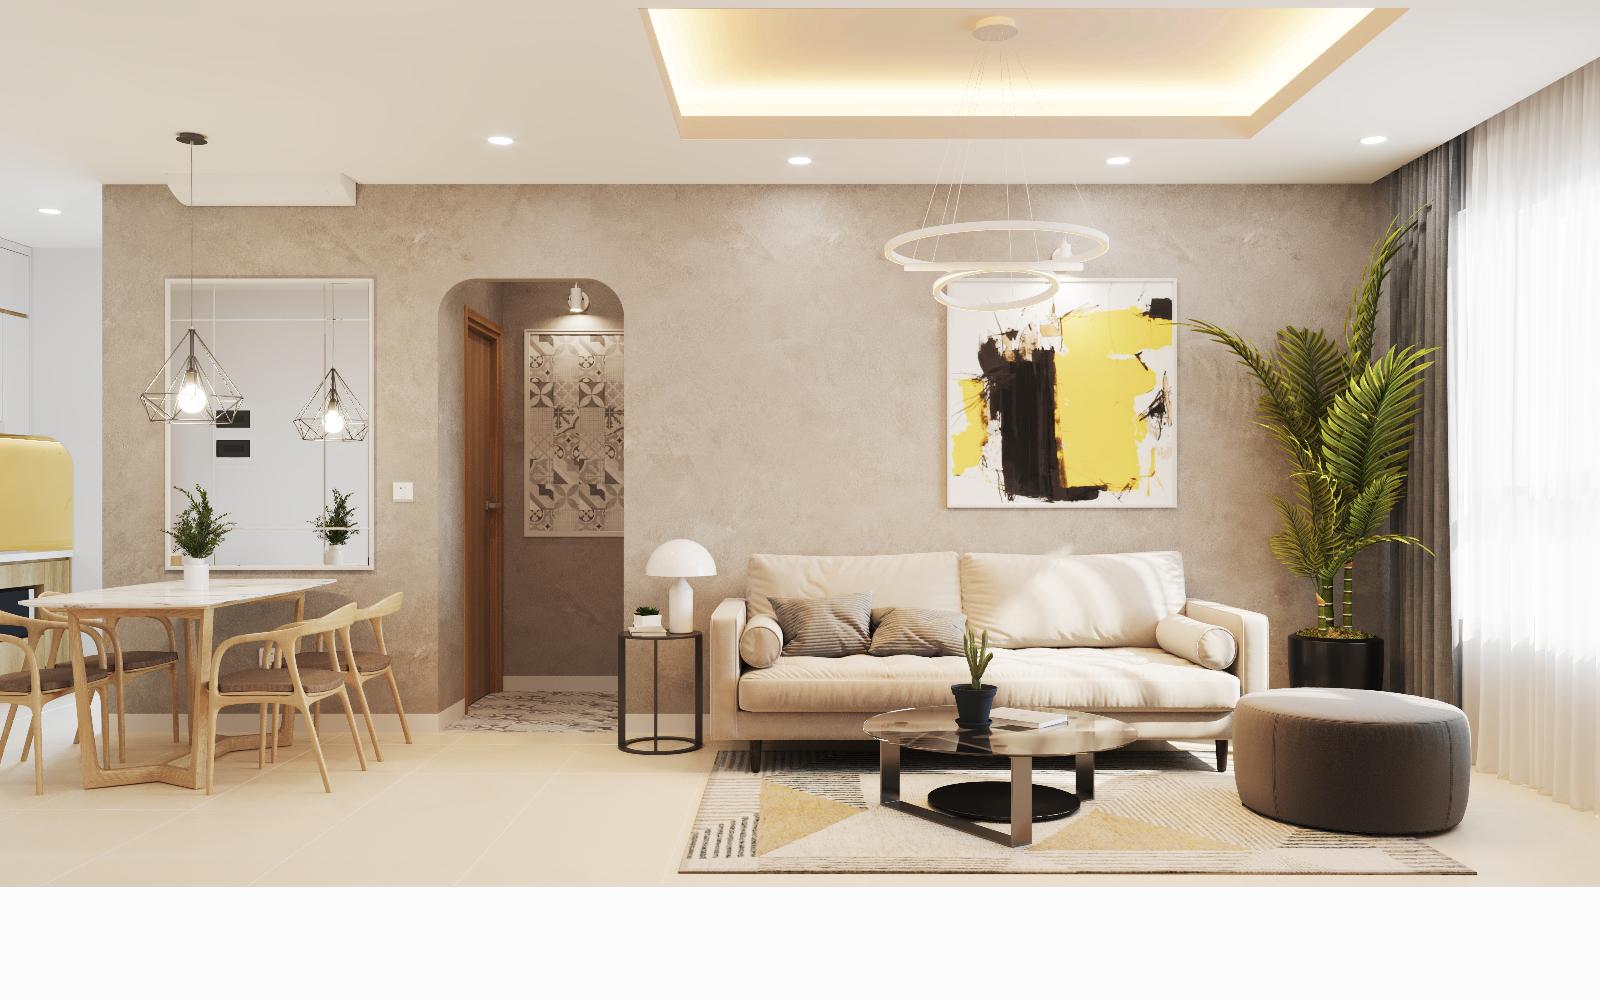 Thiết kế căn hộ 01 phòng ngủ chung cư Emerald quận Tân Phú ảnh 03